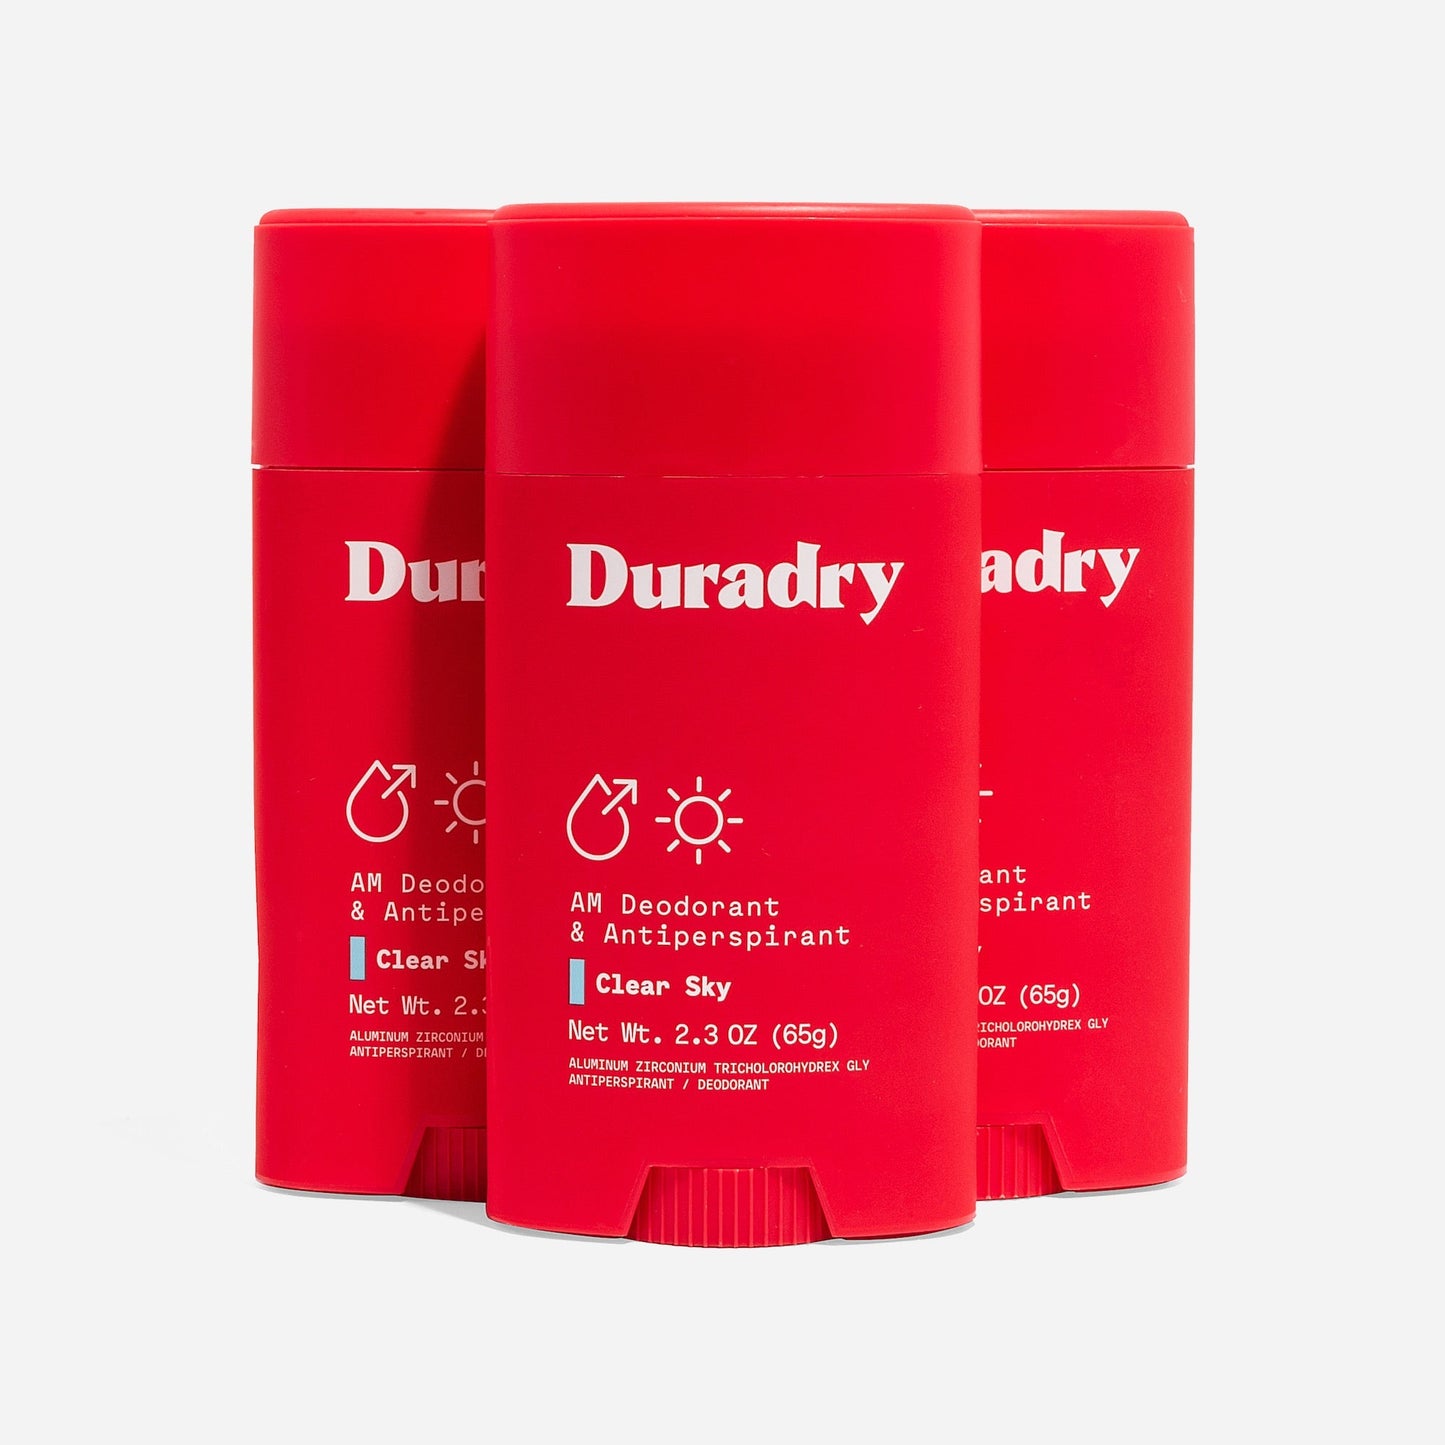 Duradry Antiperspirant Deodorant Stick (3-Pack)